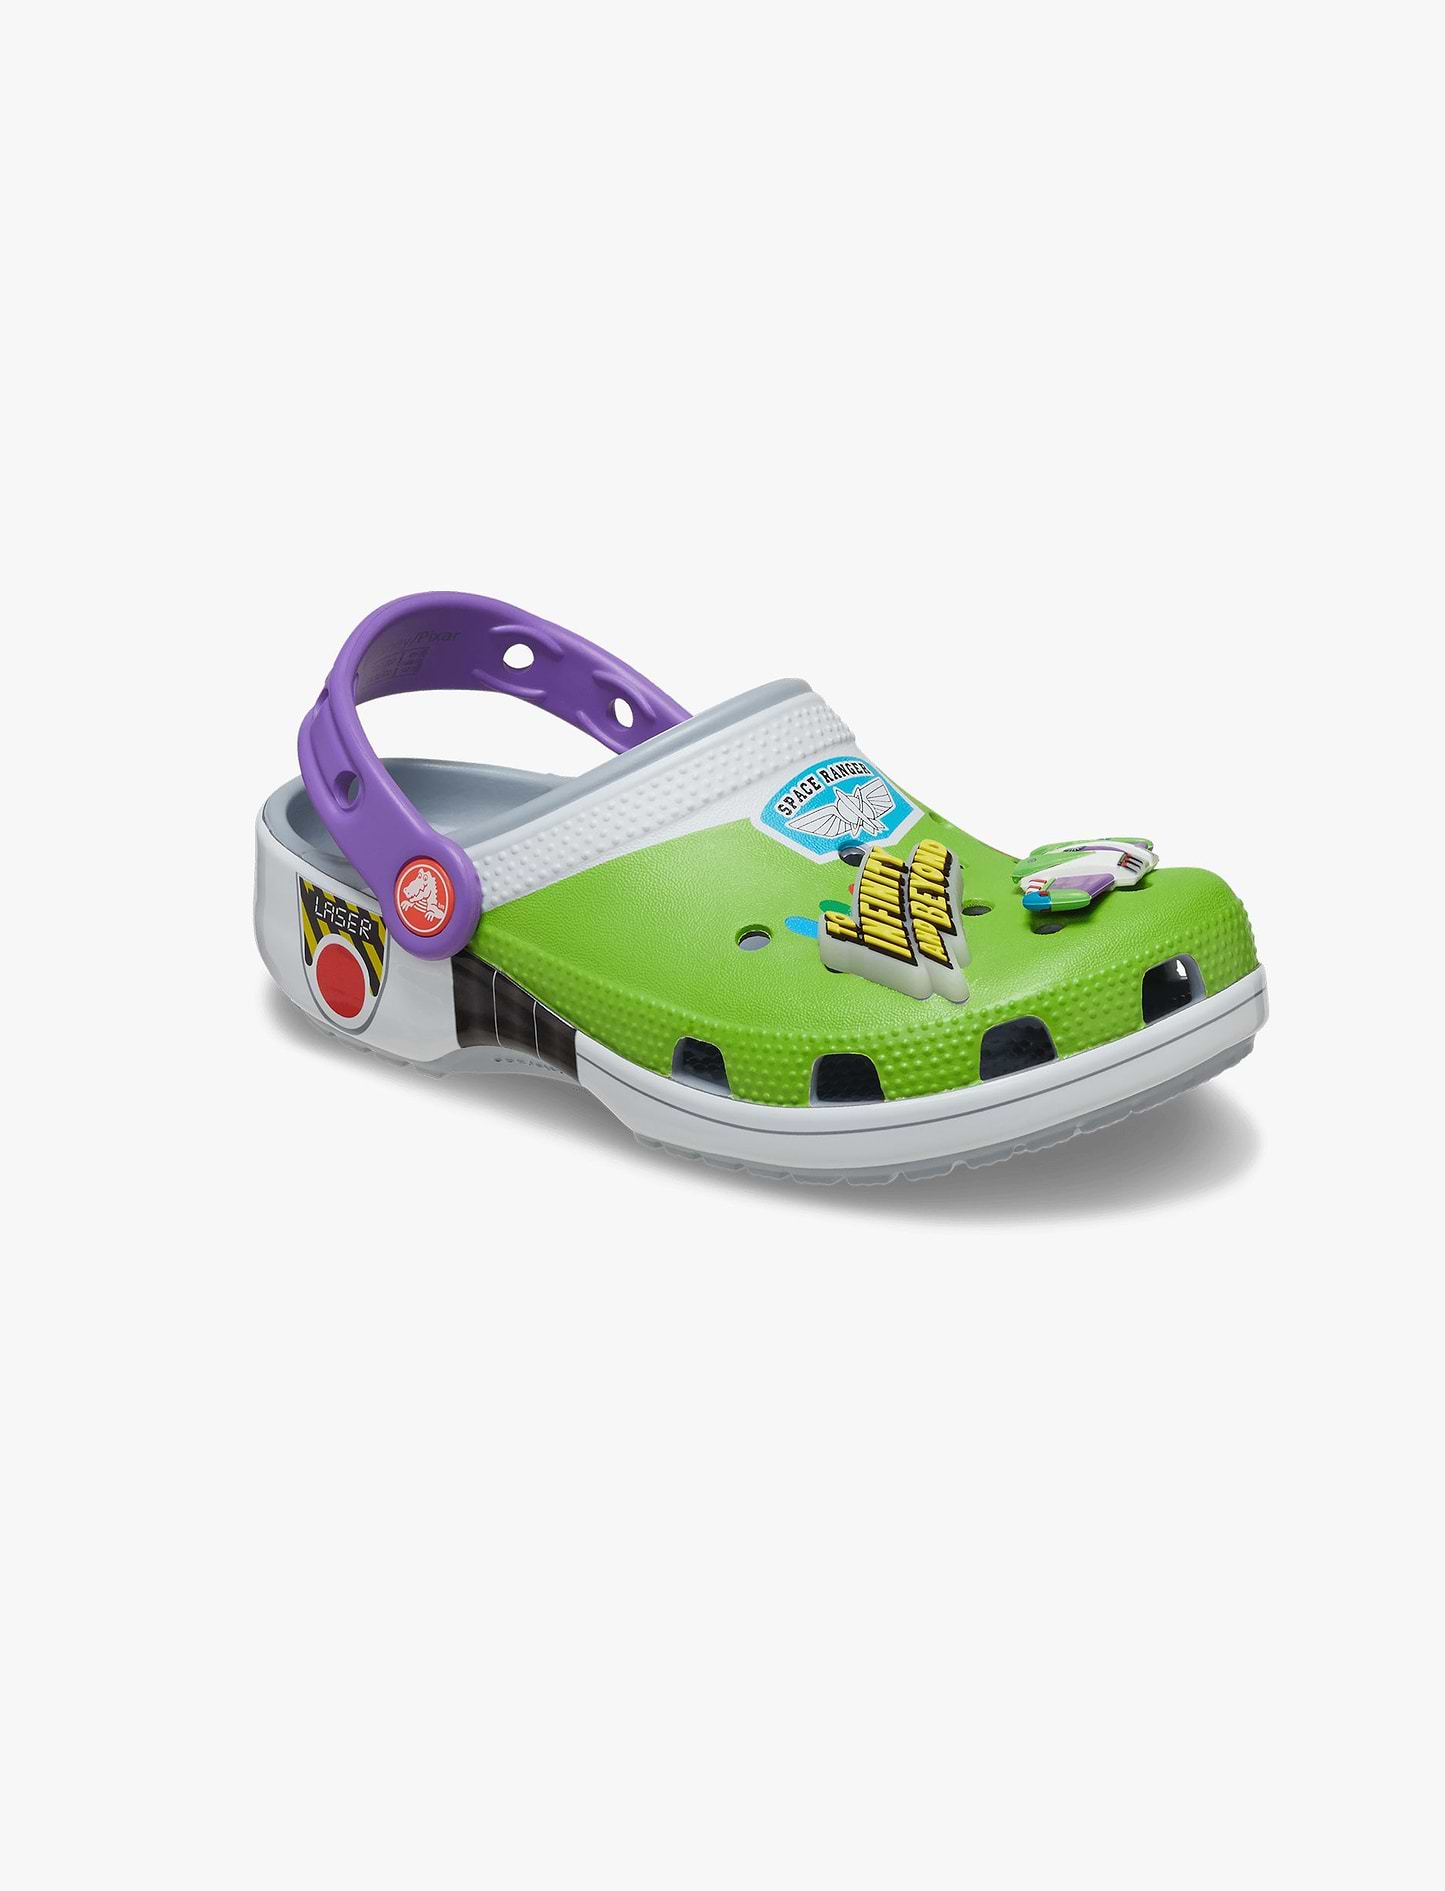 Crocs Toy Story Buzz Classic Clog T - כפכפי קרוקס לילדים צעצוע של סיפור